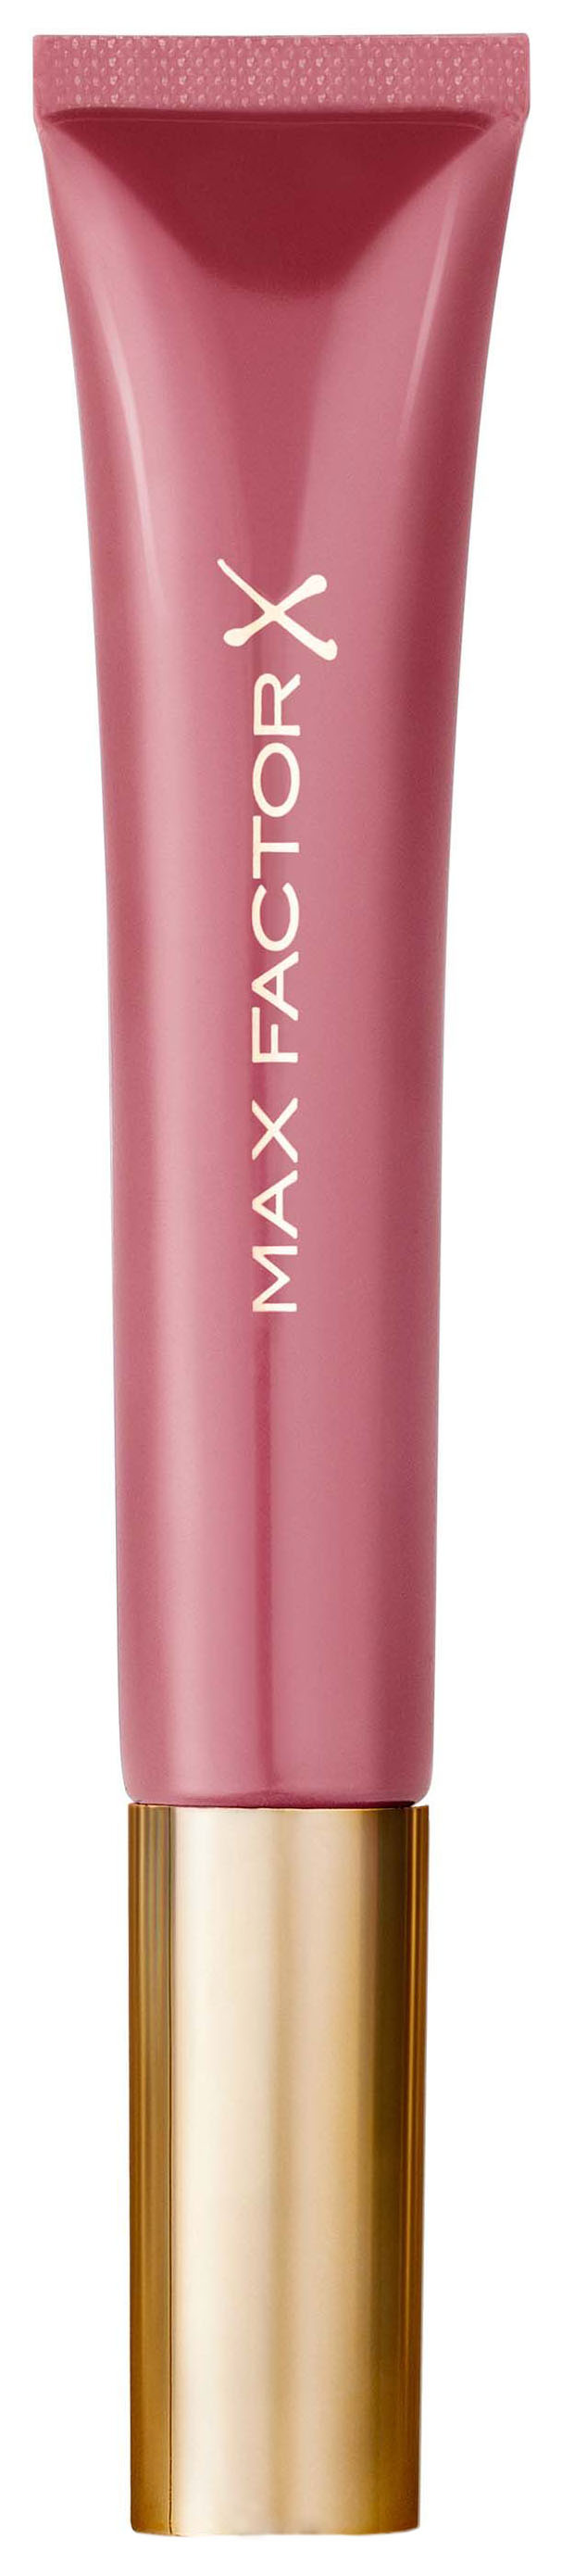 Блеск для губ Max Factor Colour Elixir 020 Slendor Chic 9 мл